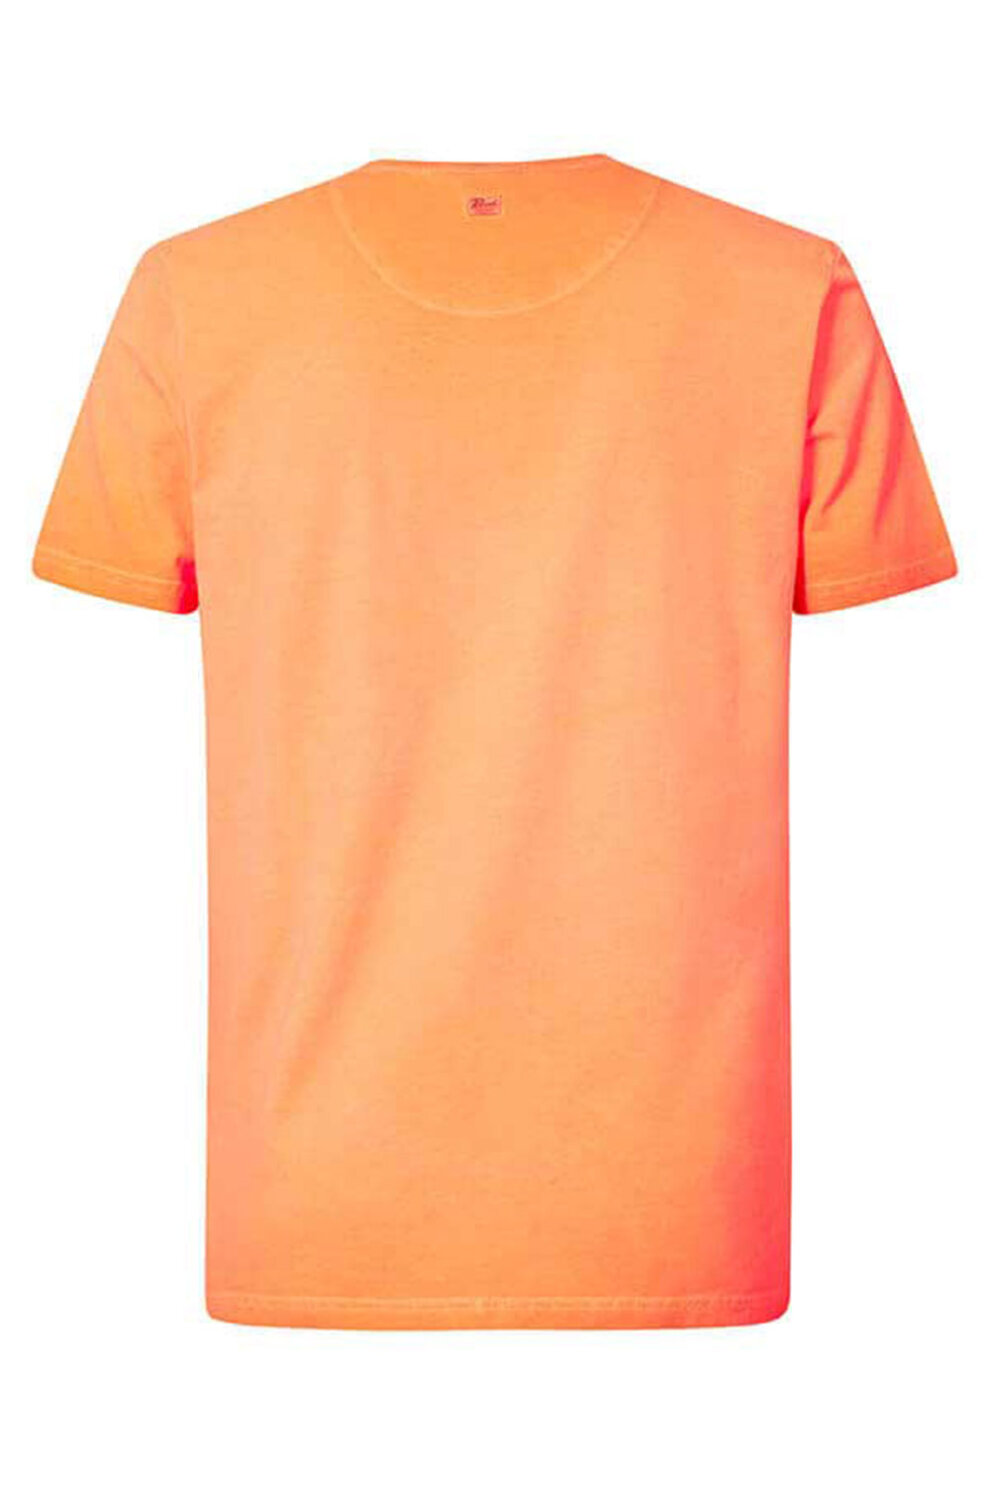 MUŠKARCI - Majice - Petrol majica - Kratki rukavi - Narančasta